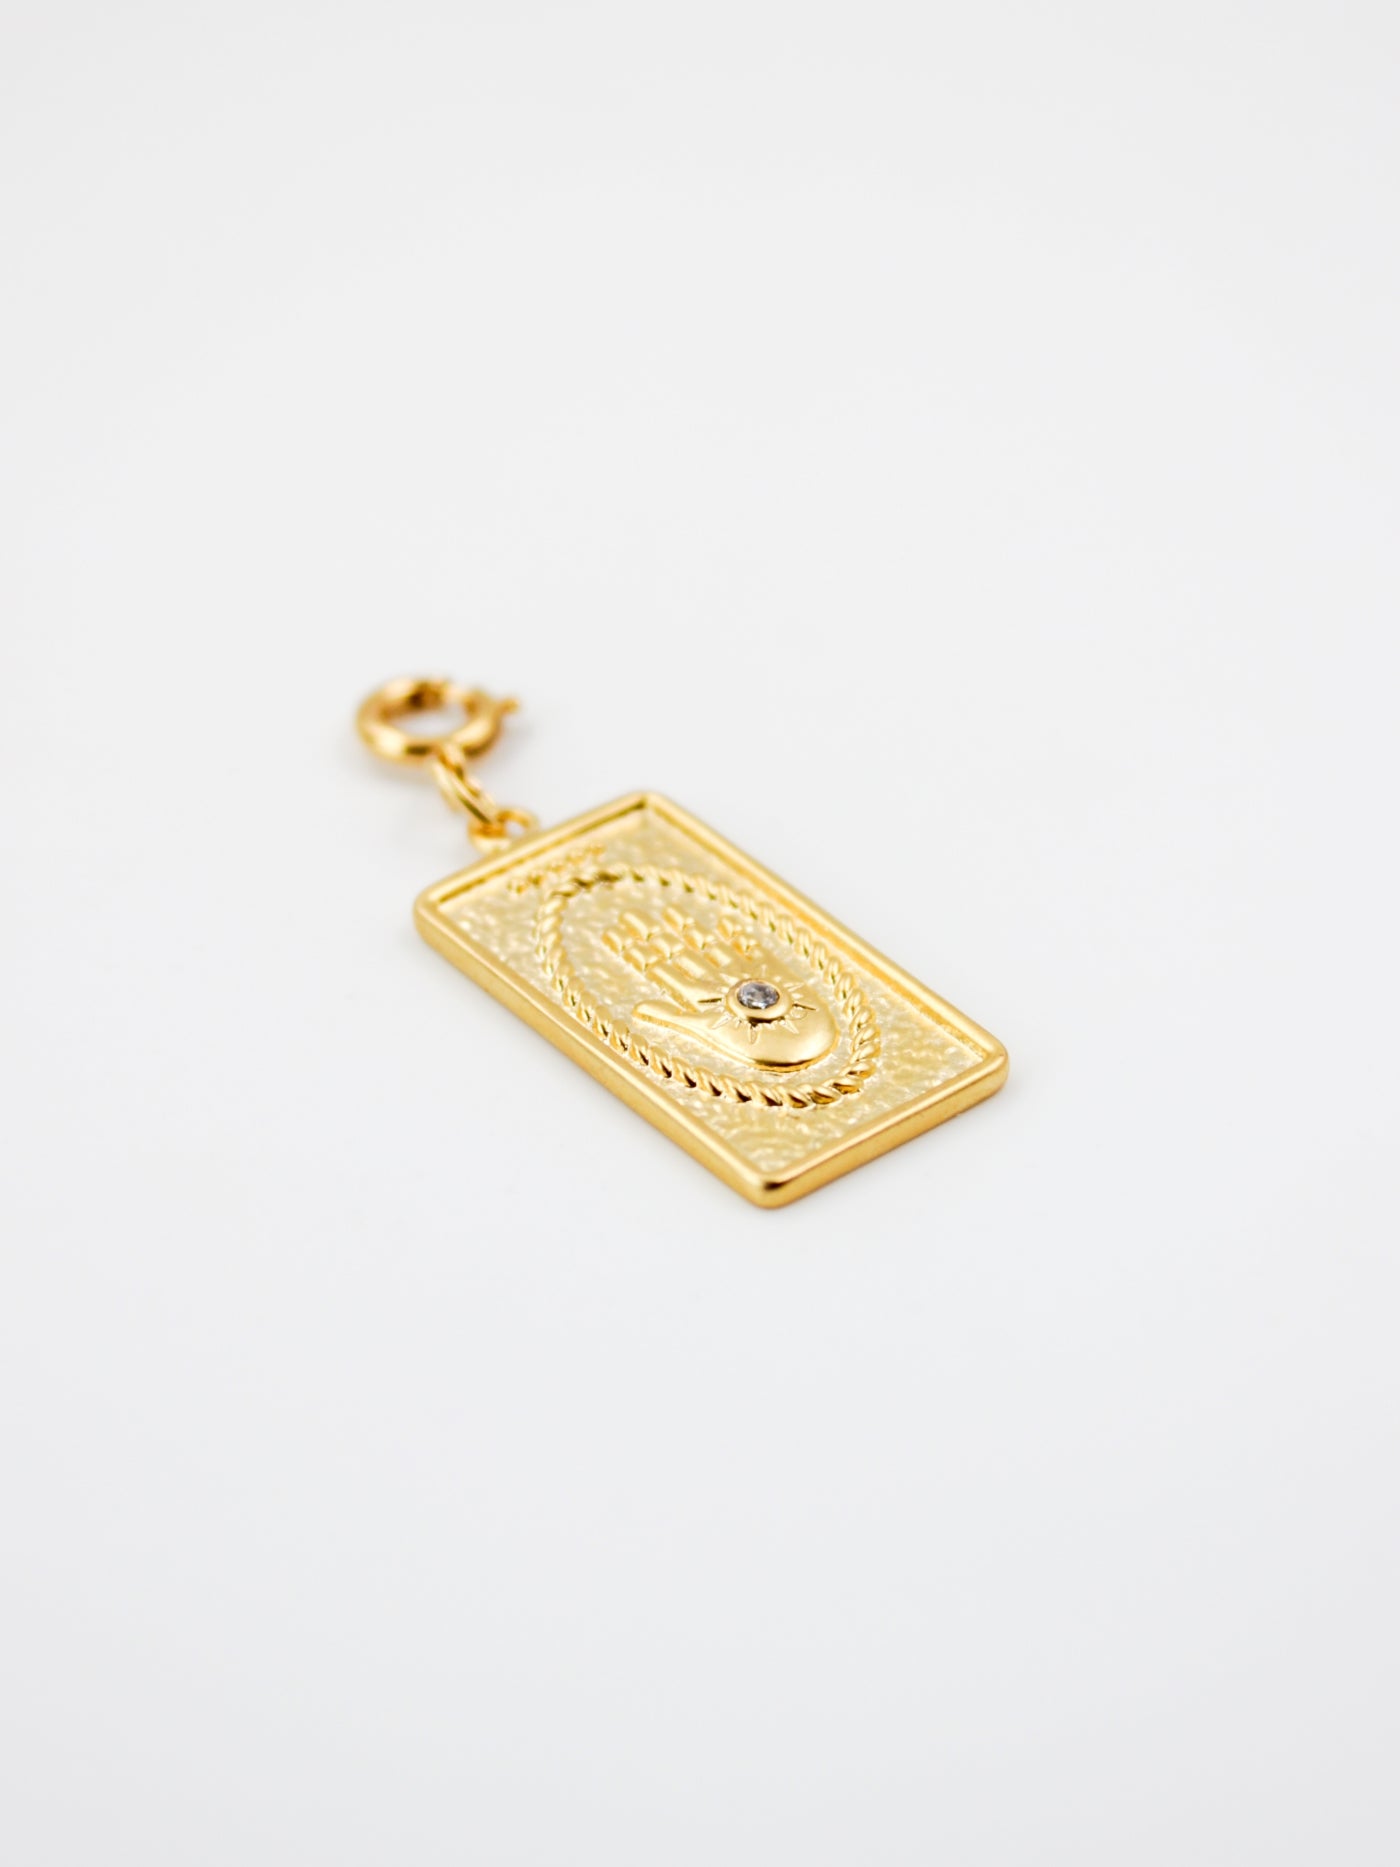 Charm carte tarot doré de la gamme GRIGRI - L'Atelier des Dames